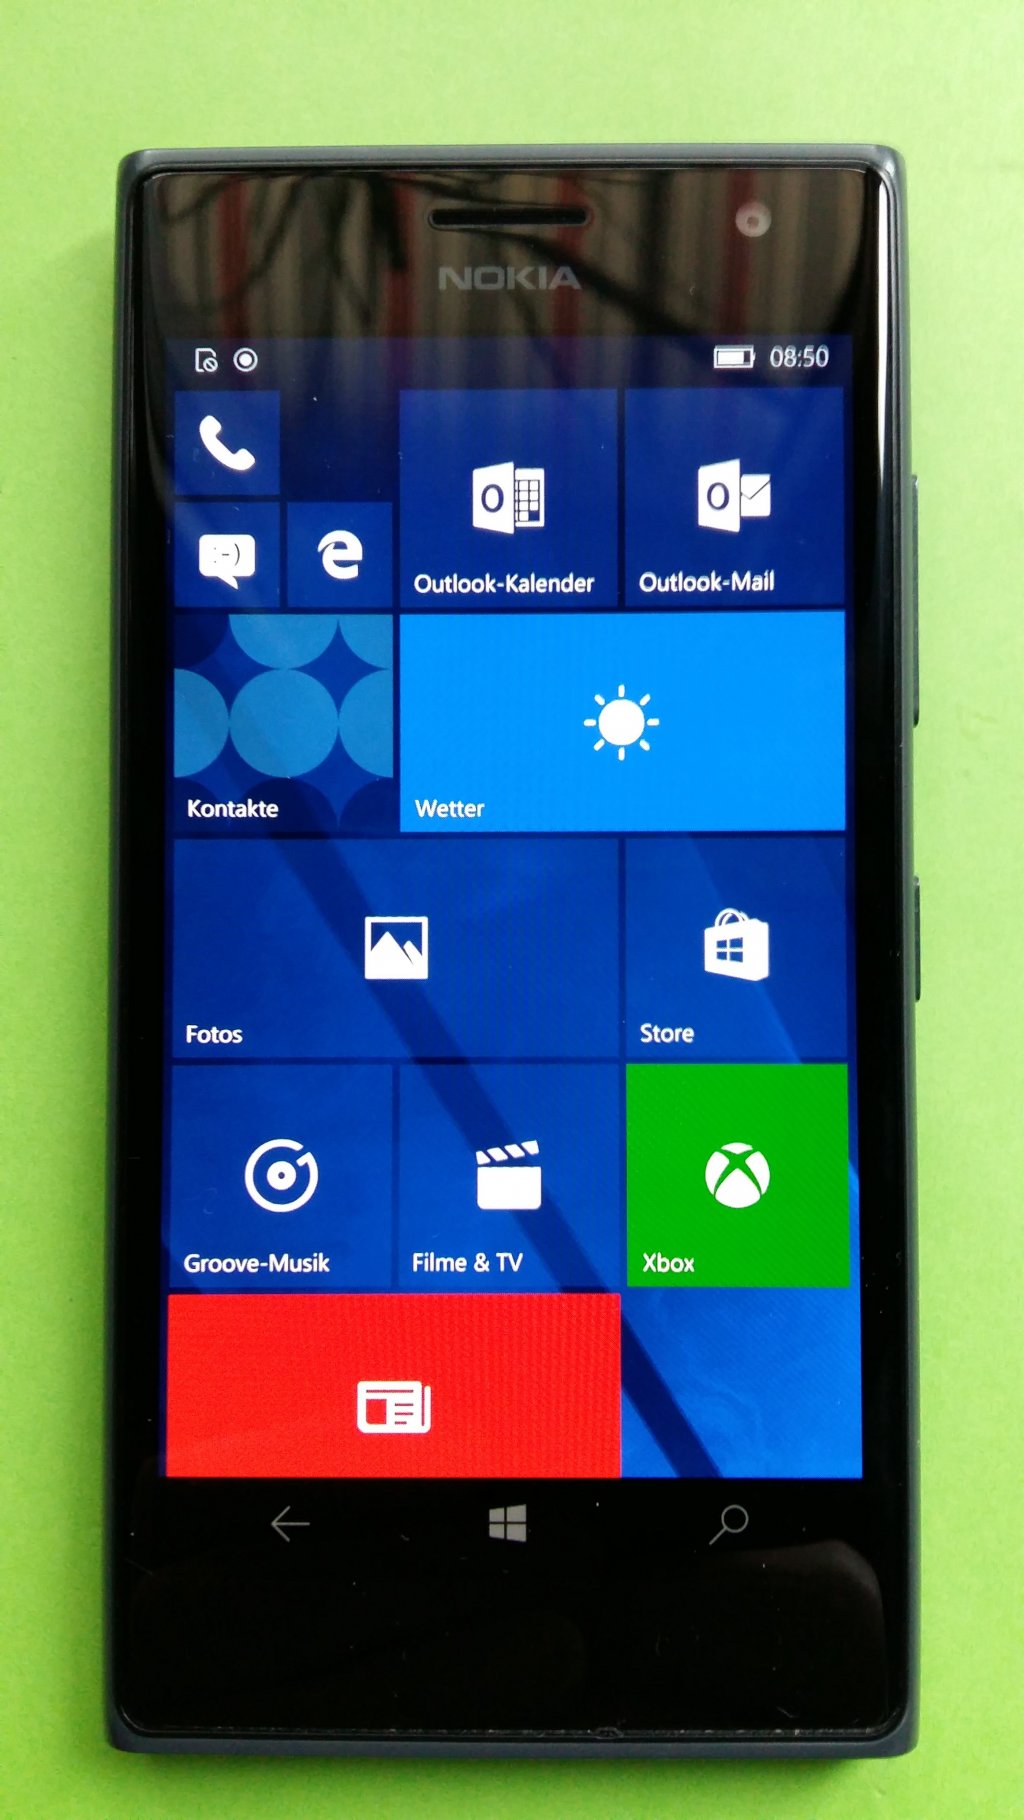 image-8090392-Nokia_735_Lumia_(1)1.w640.jpg